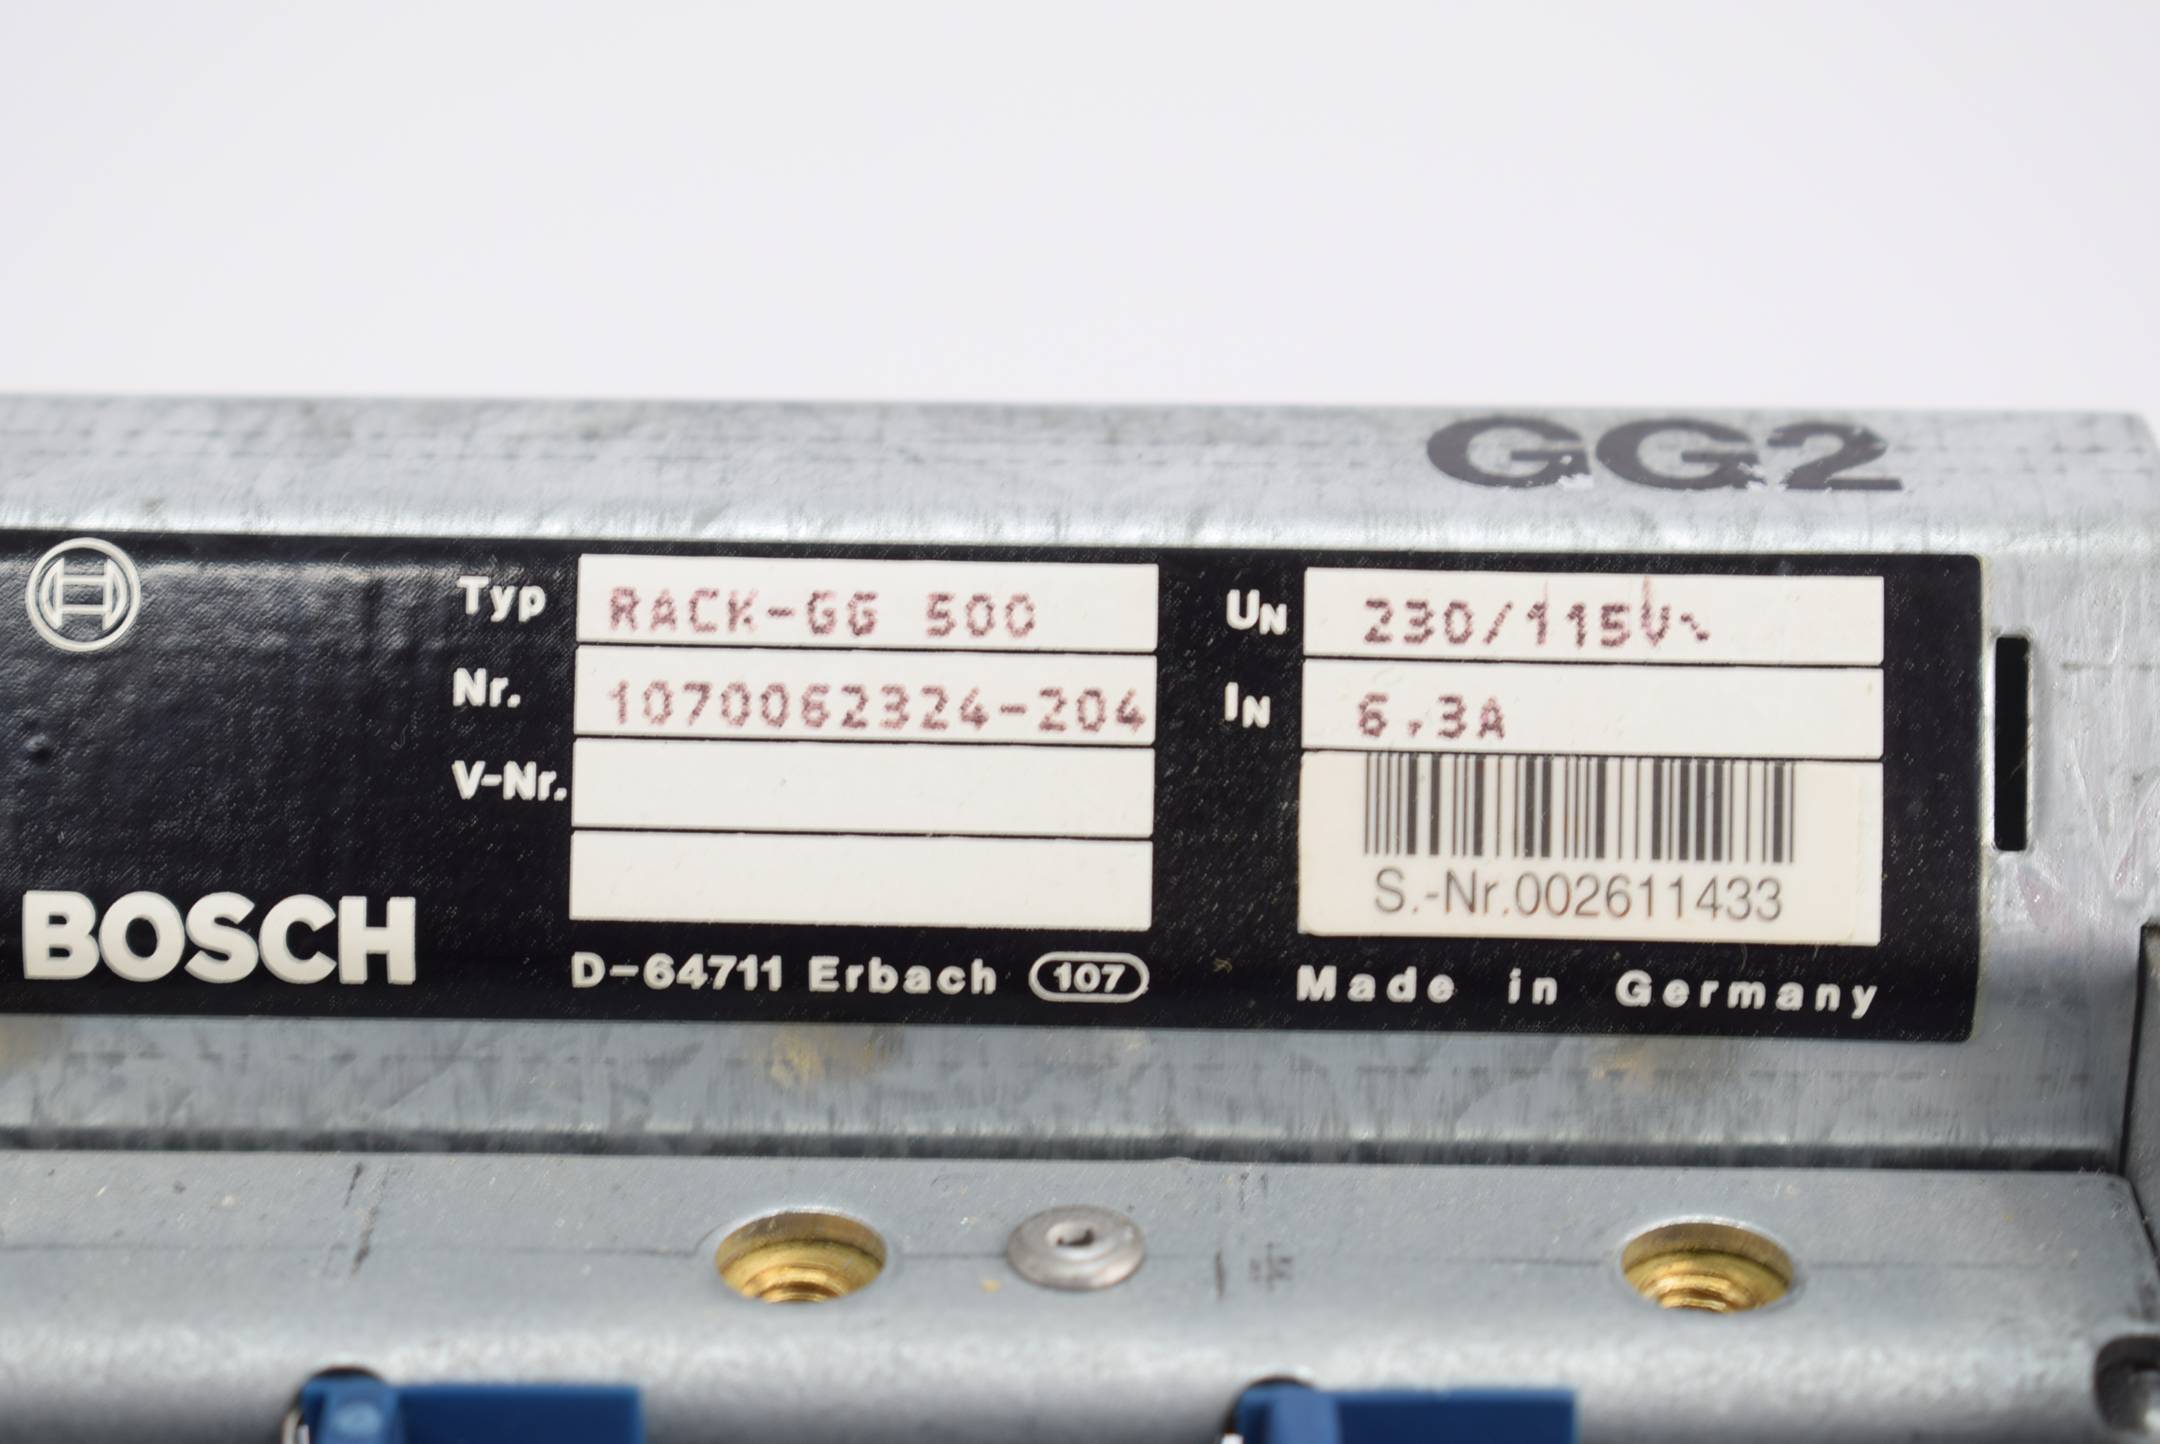 Bosch Rack-GG 500 inkl. Stromversorgung NT2 1070062687-301